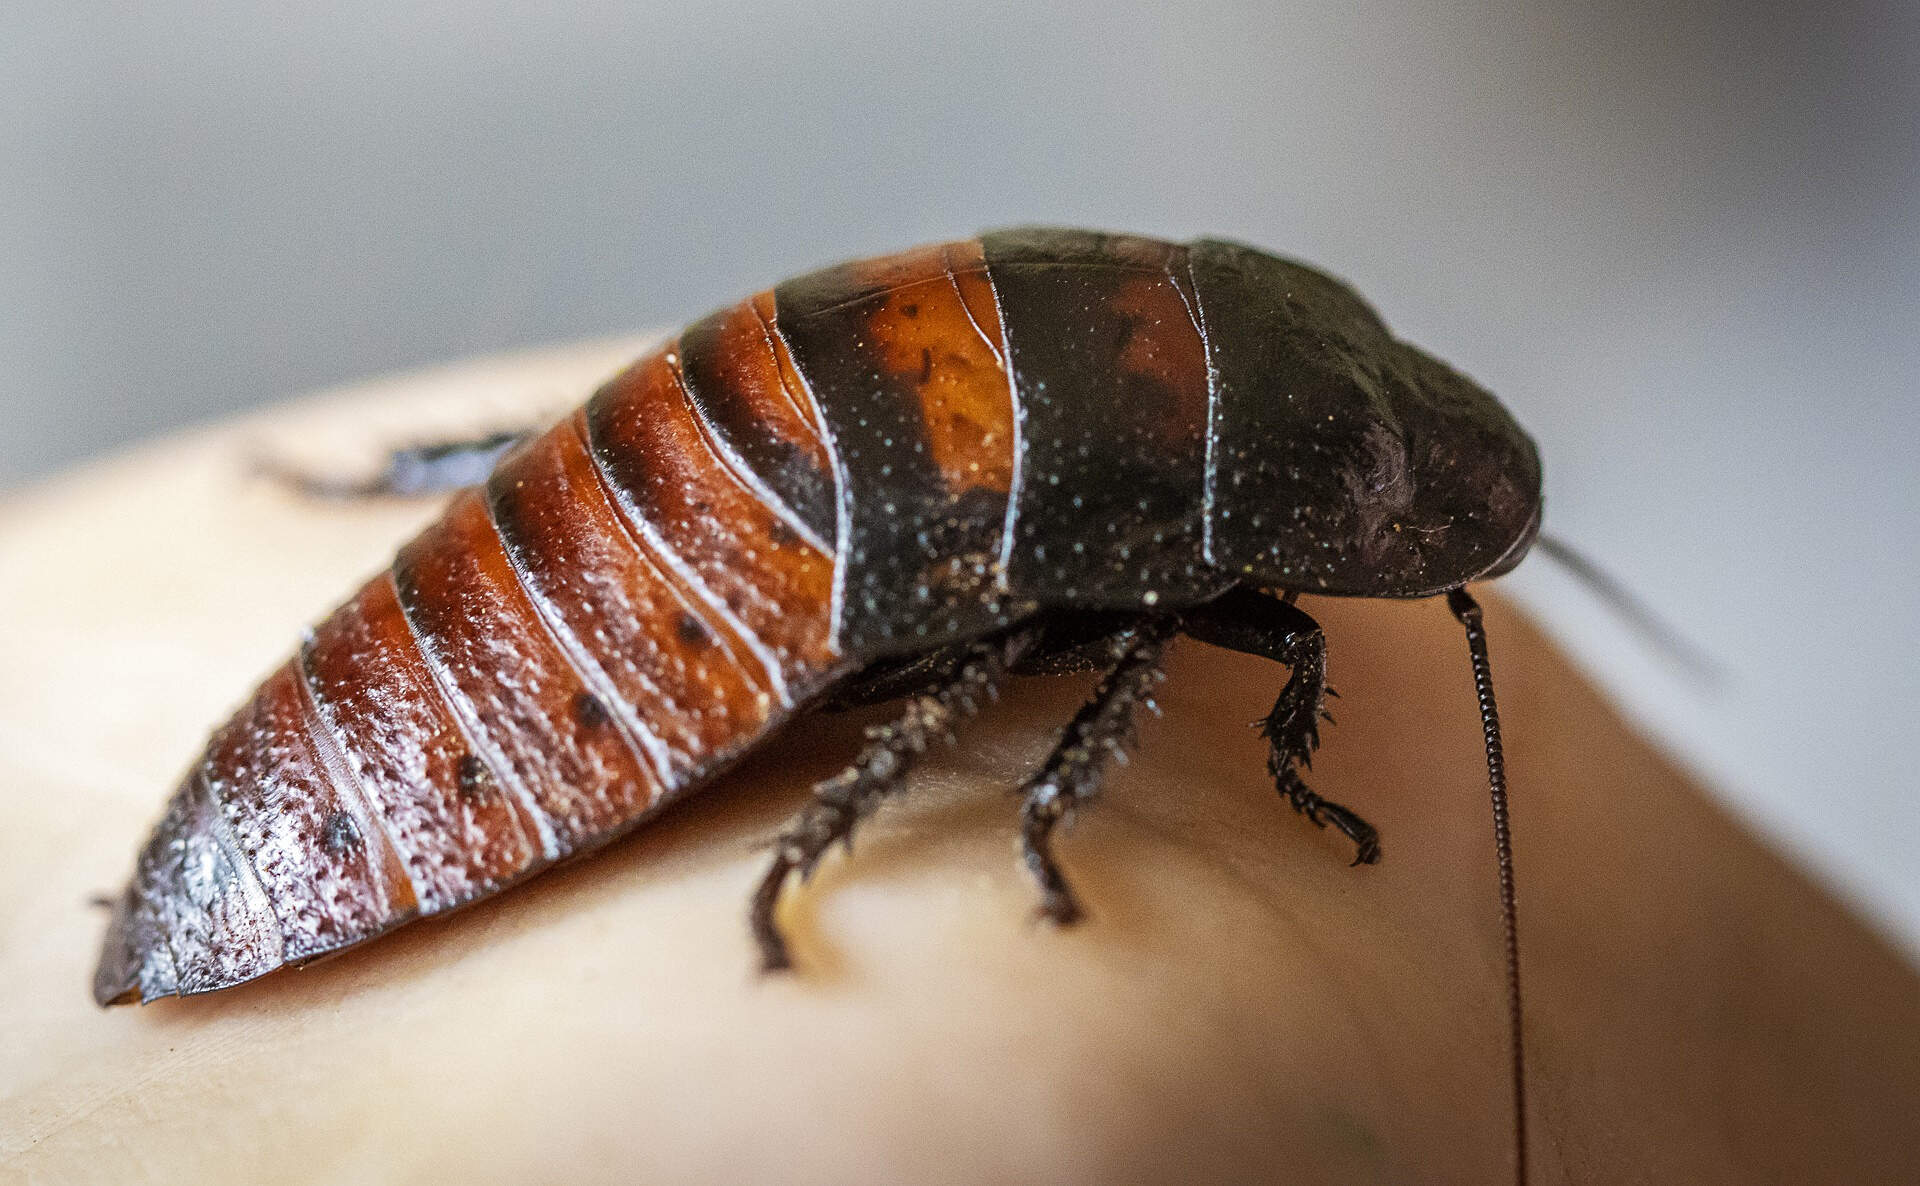 madagascar-hissing-cockroach